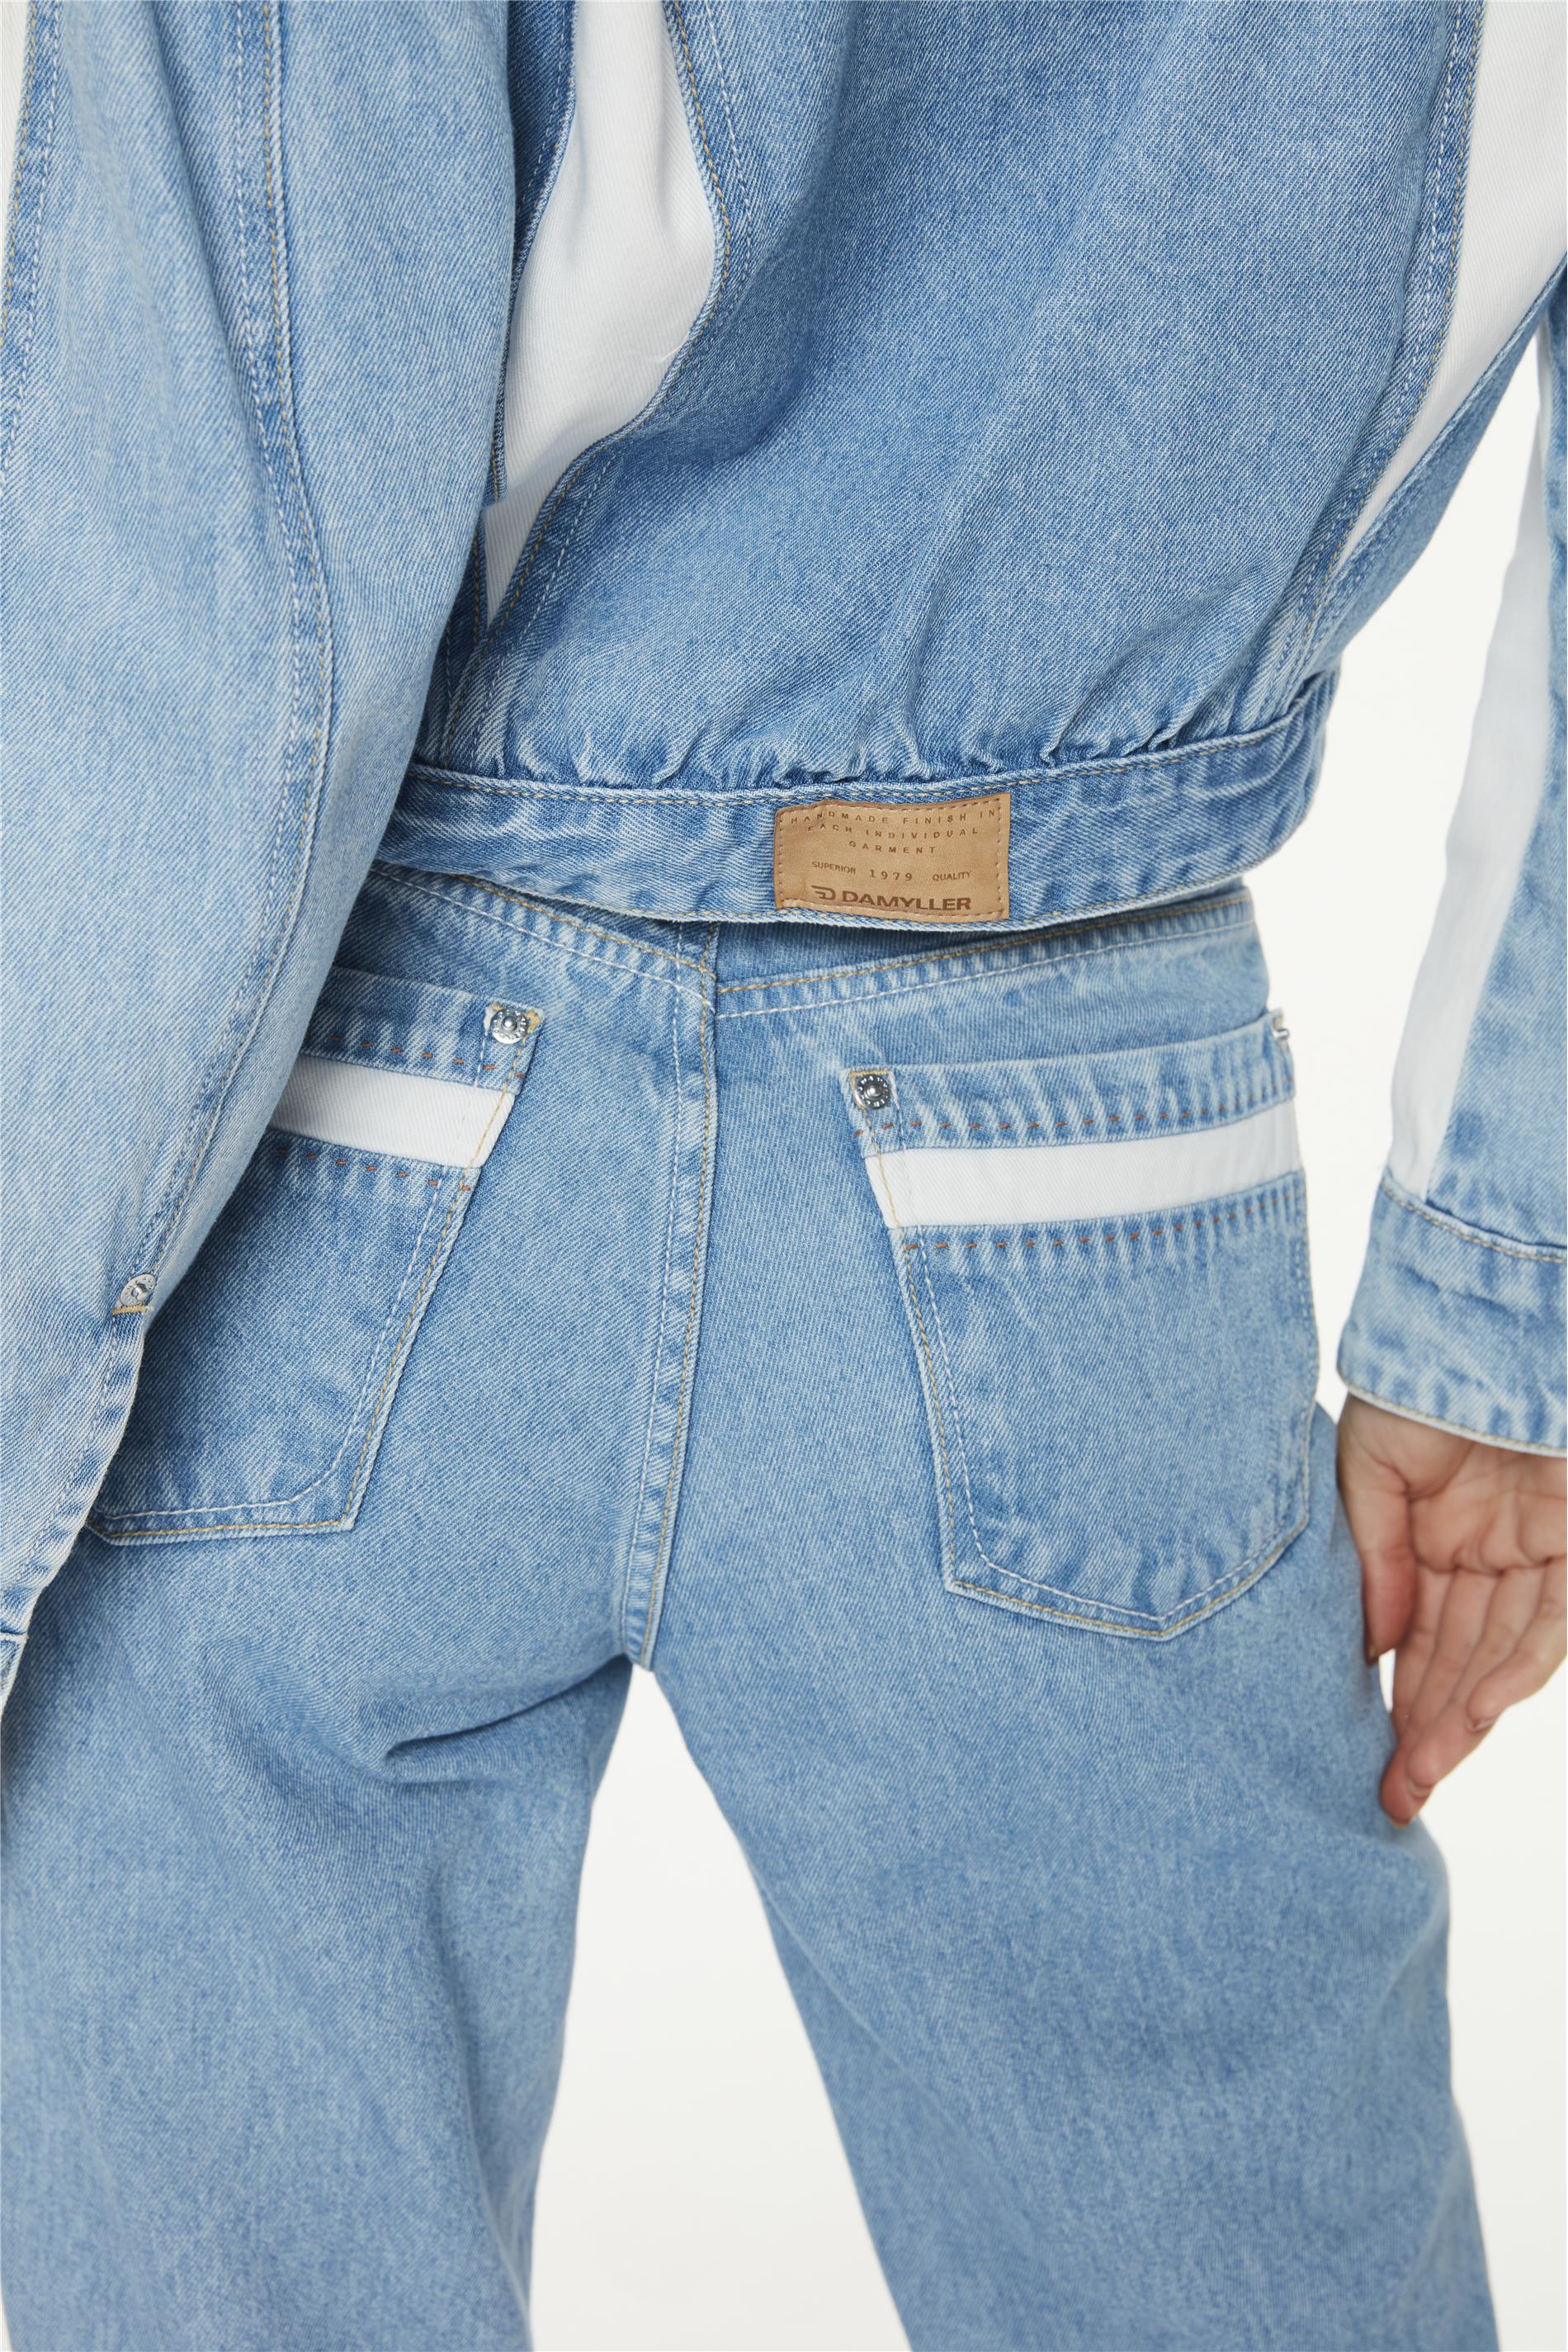 Top Cropped Jeans Recortes Ecodamyller - Damyller - O Jeans da